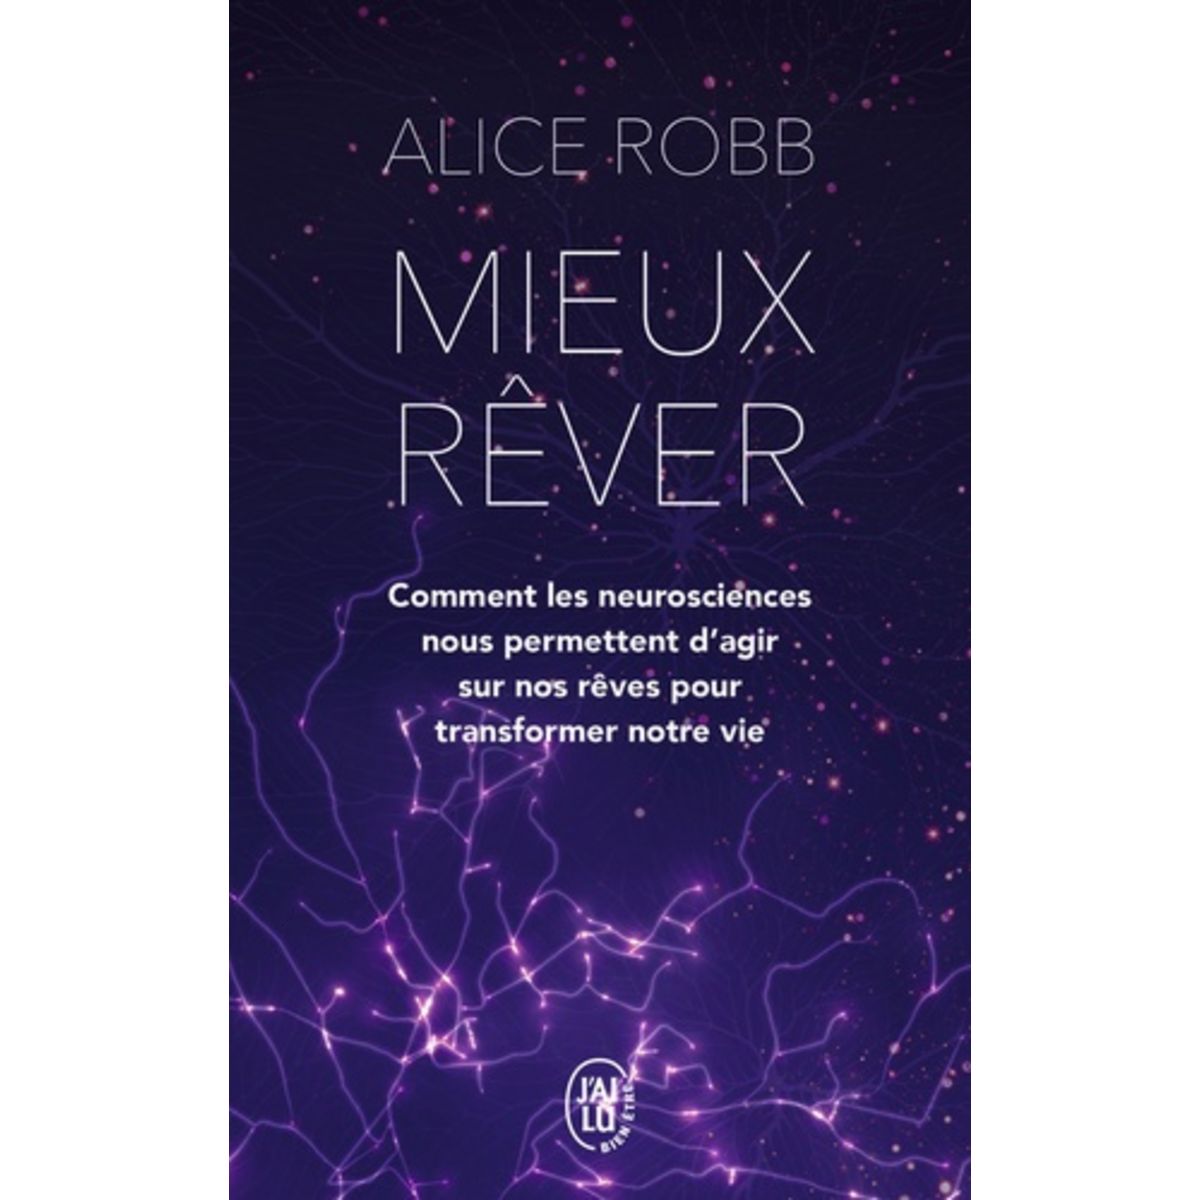  MIEUX REVER. COMMENT LES NEUROSCIENCES NOUS PERMETTENT D'AGIR SUR NOS REVES POUR TRANSFORMER NOTRE VIE, Robb Alice